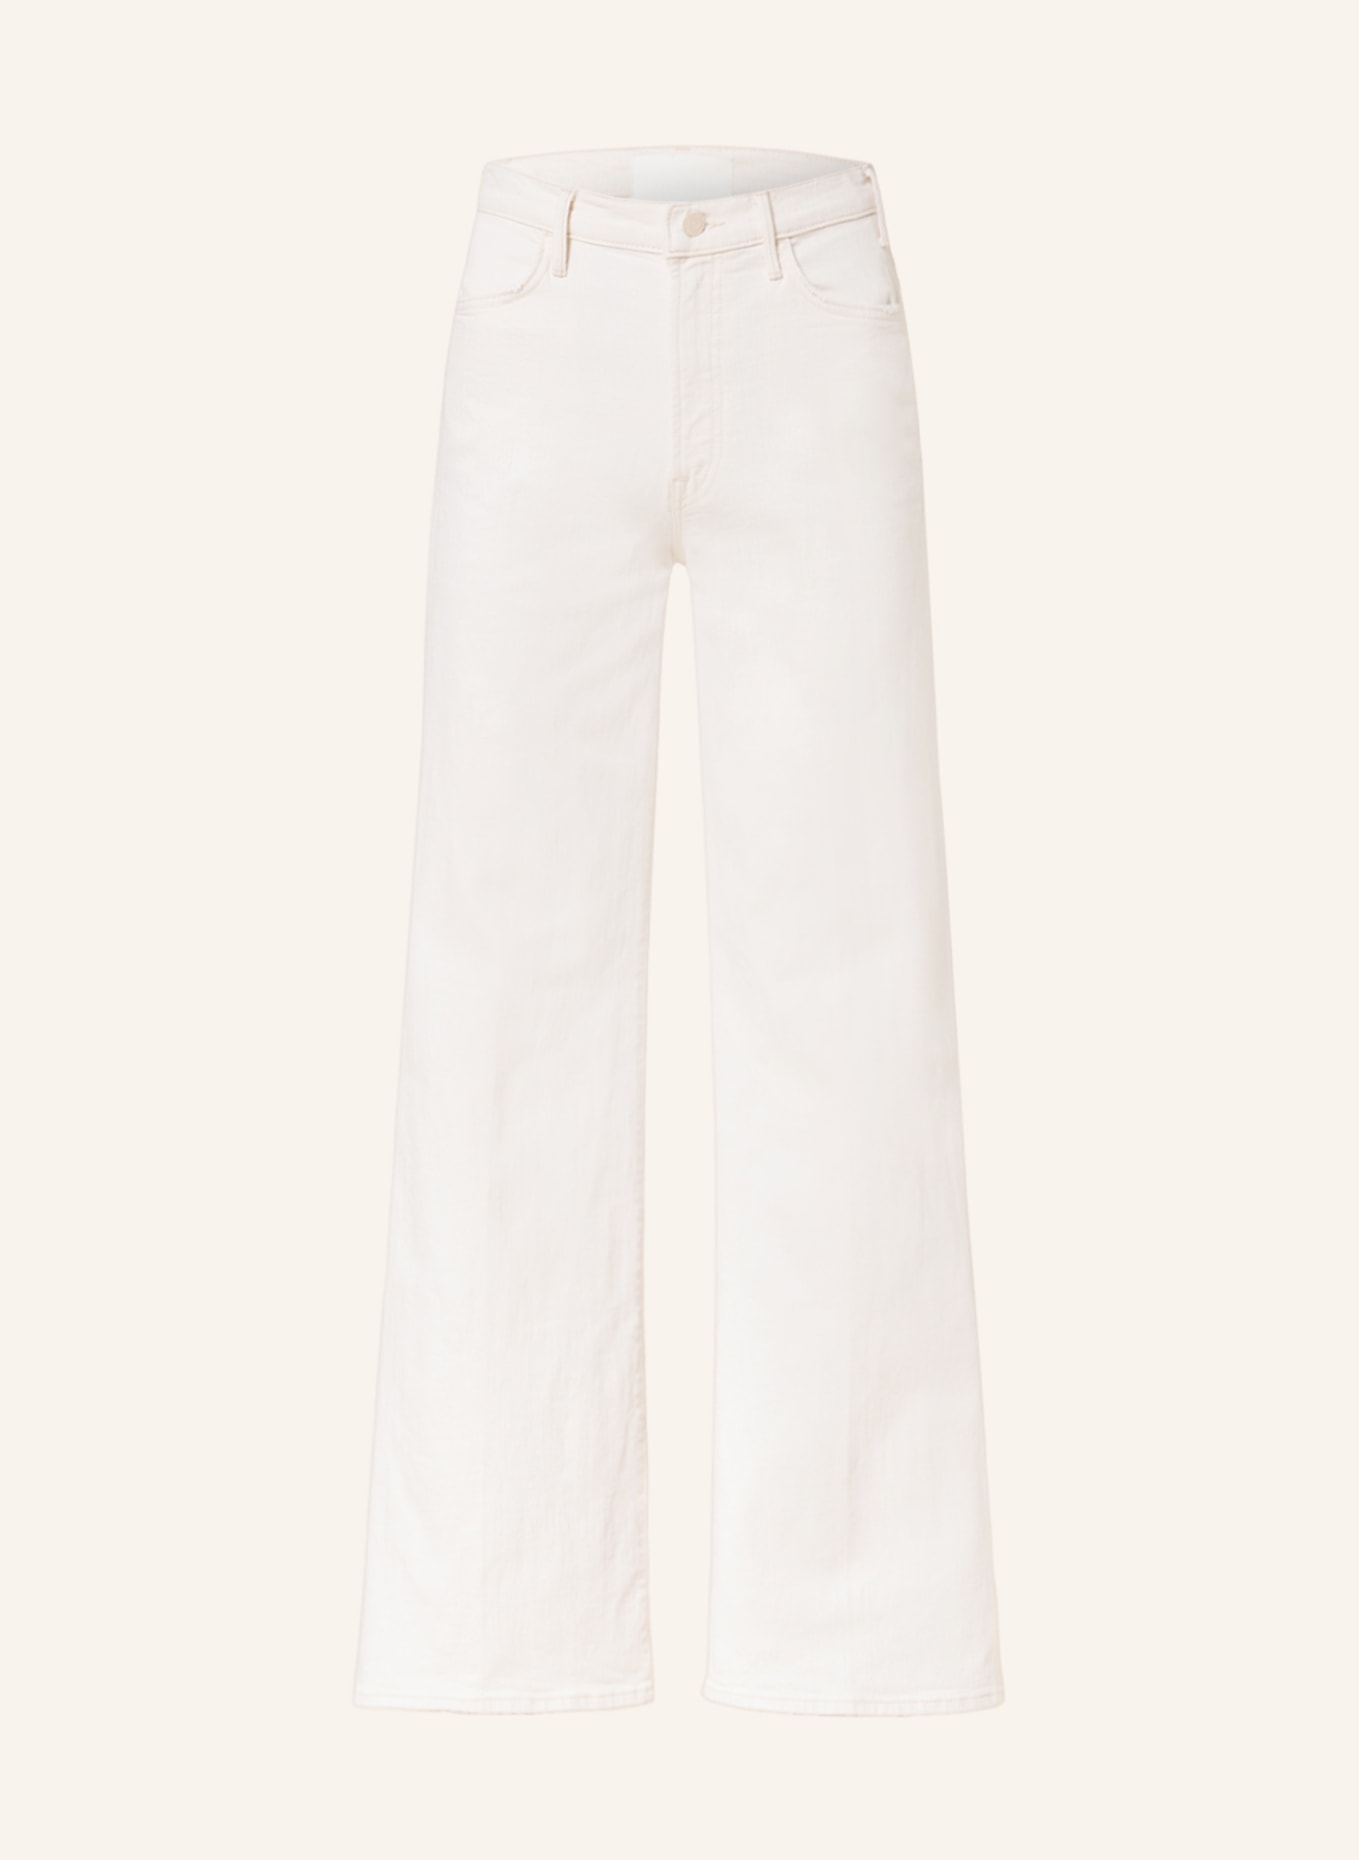 MOTHER Flared jeans HUSTLER ROLLER, Color: ECRU (Image 1)